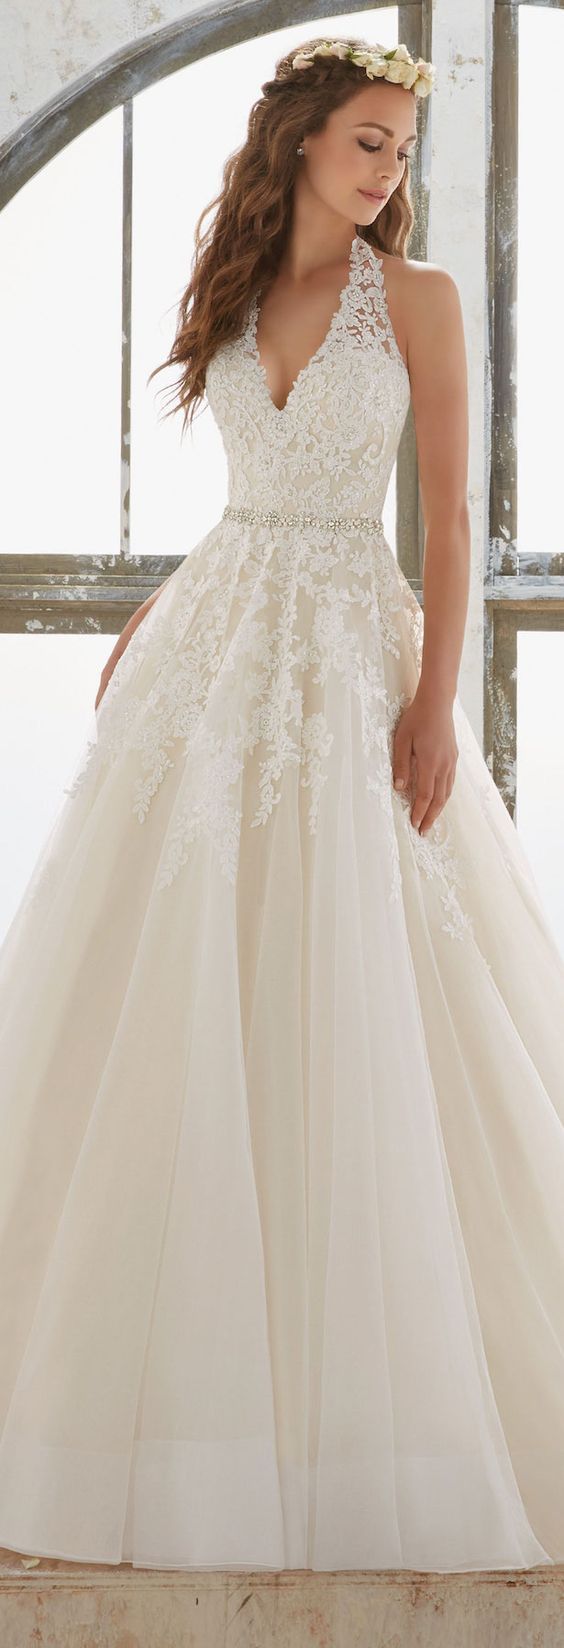 Свадьба - Wedding Dress Inspiration - Mori Lee